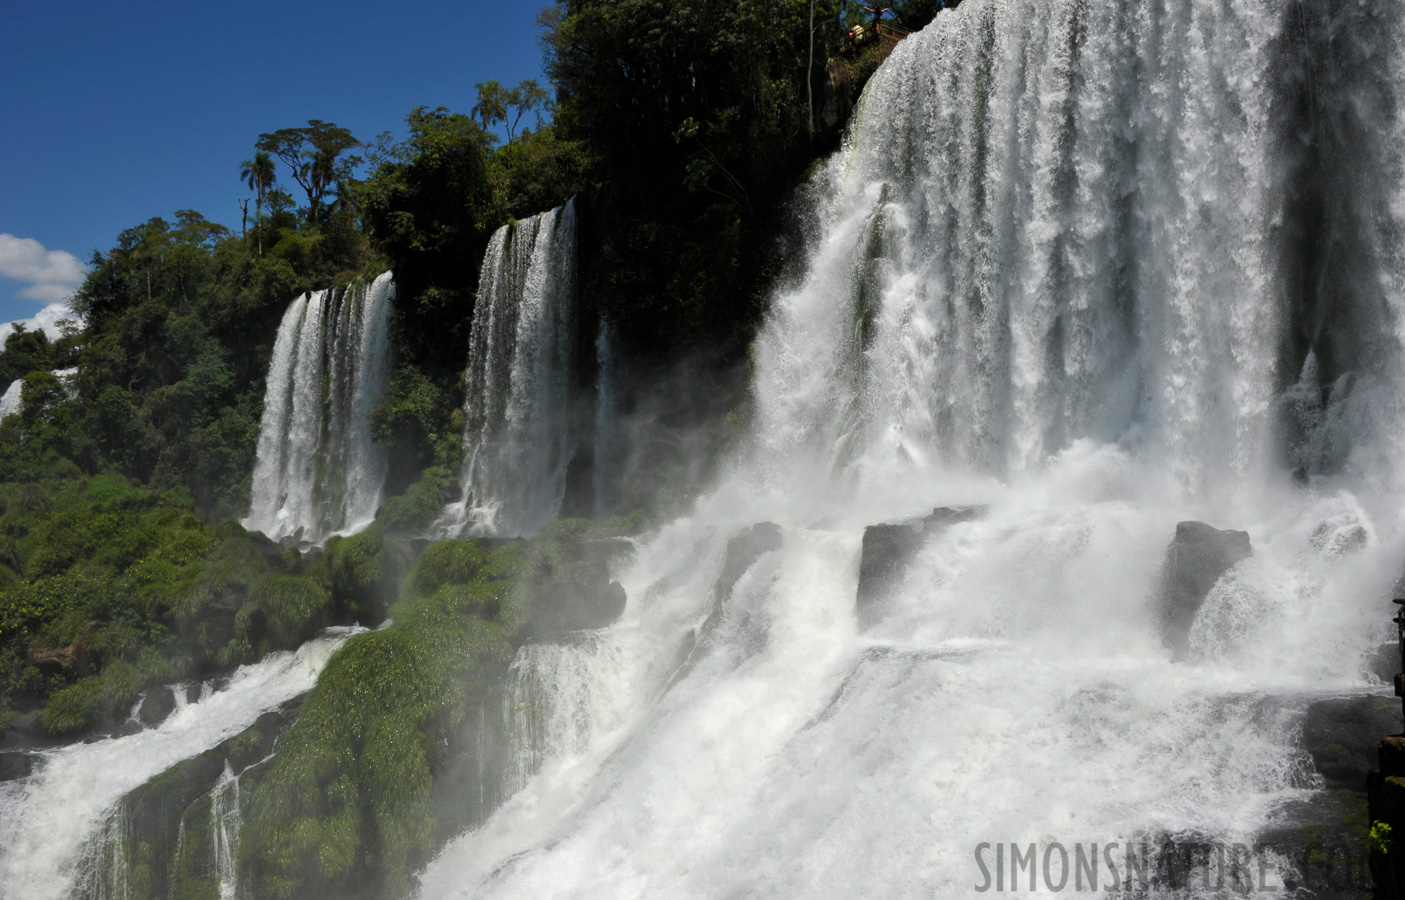 Cataratas del Iguazu [28 mm, 1/250 sec at f / 22, ISO 400]